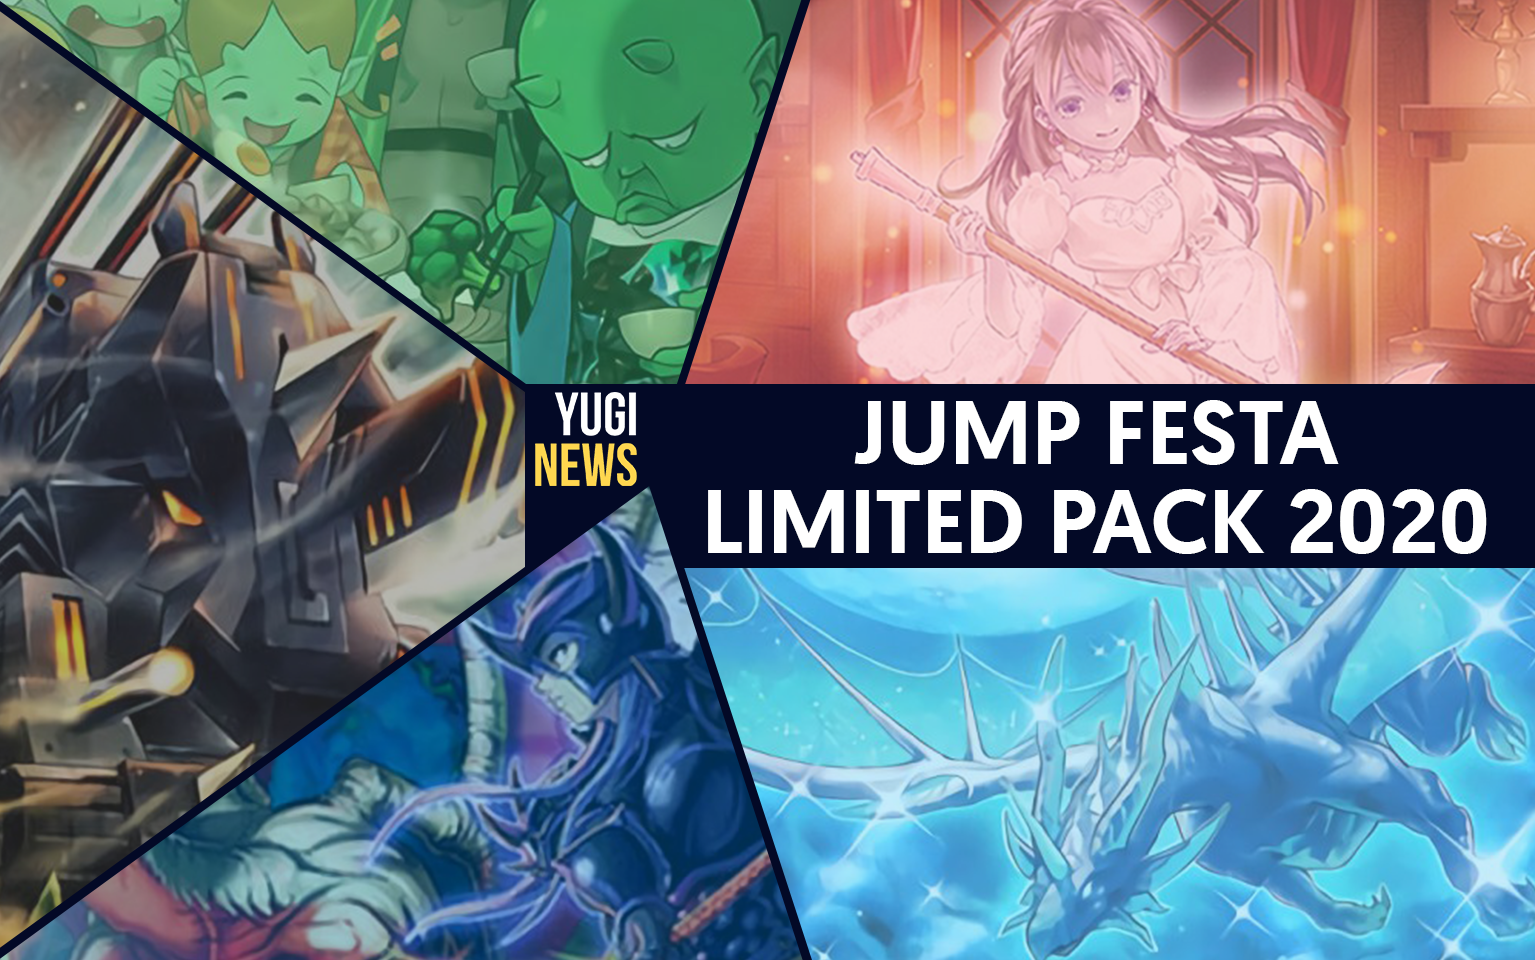 Les cartes du Jump Festa Limited Pack 2020